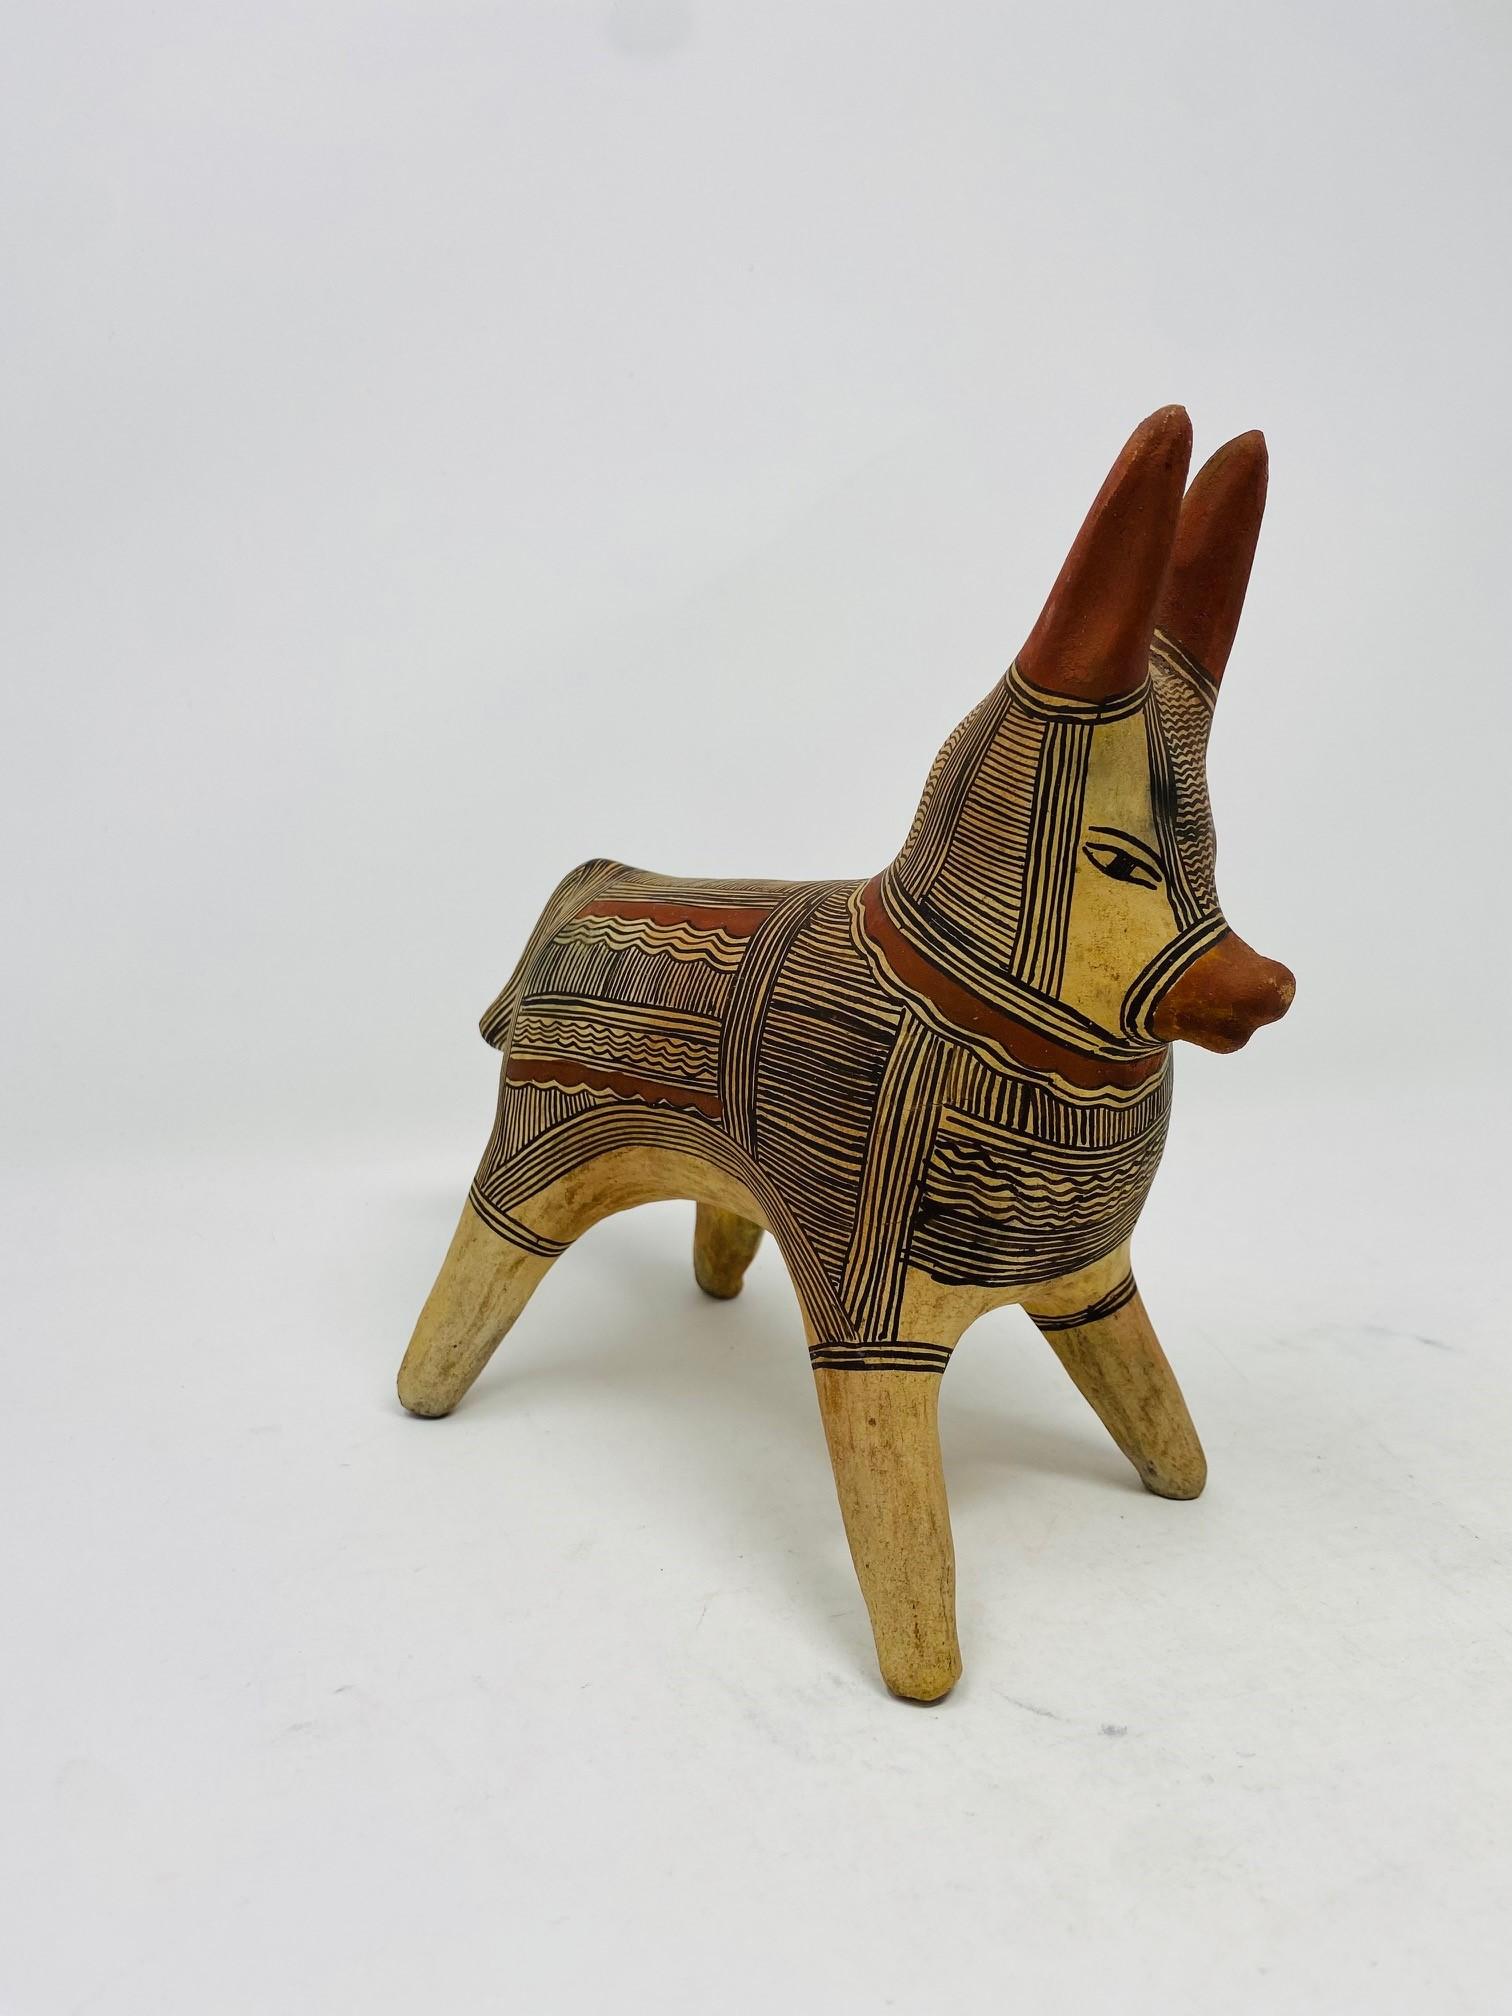 Unglaublich charmante und stilvolle Esel-Skulptur aus Töpferton aus Mexiko.  Dieses einzigartige Stück ist ein Unikat, das Handwerkskunst und Stil zeigt.  Die Skulptur zeigt die Figur in einer festen Haltung.  Die Figur ist in Ton eingefärbt und mit